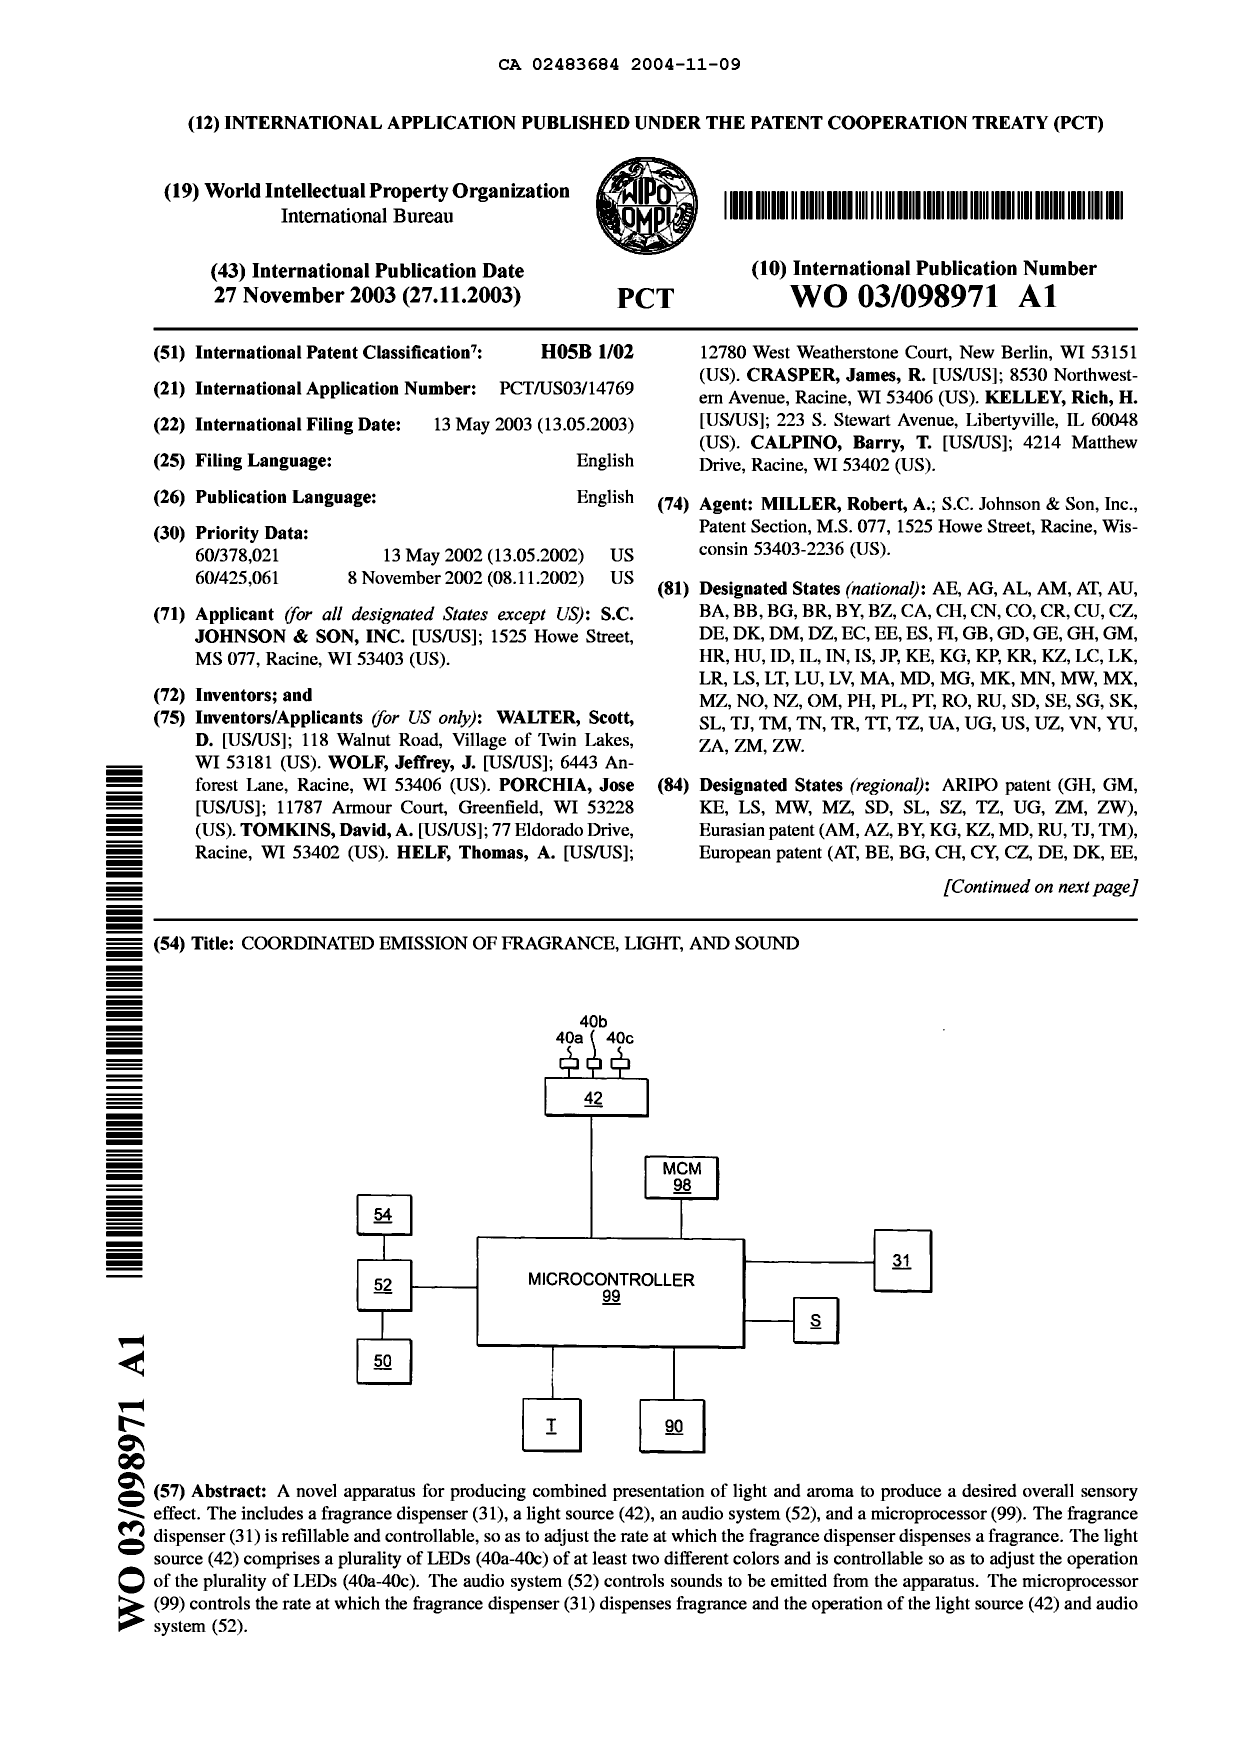 Document de brevet canadien 2483684. Abrégé 20041109. Image 1 de 2